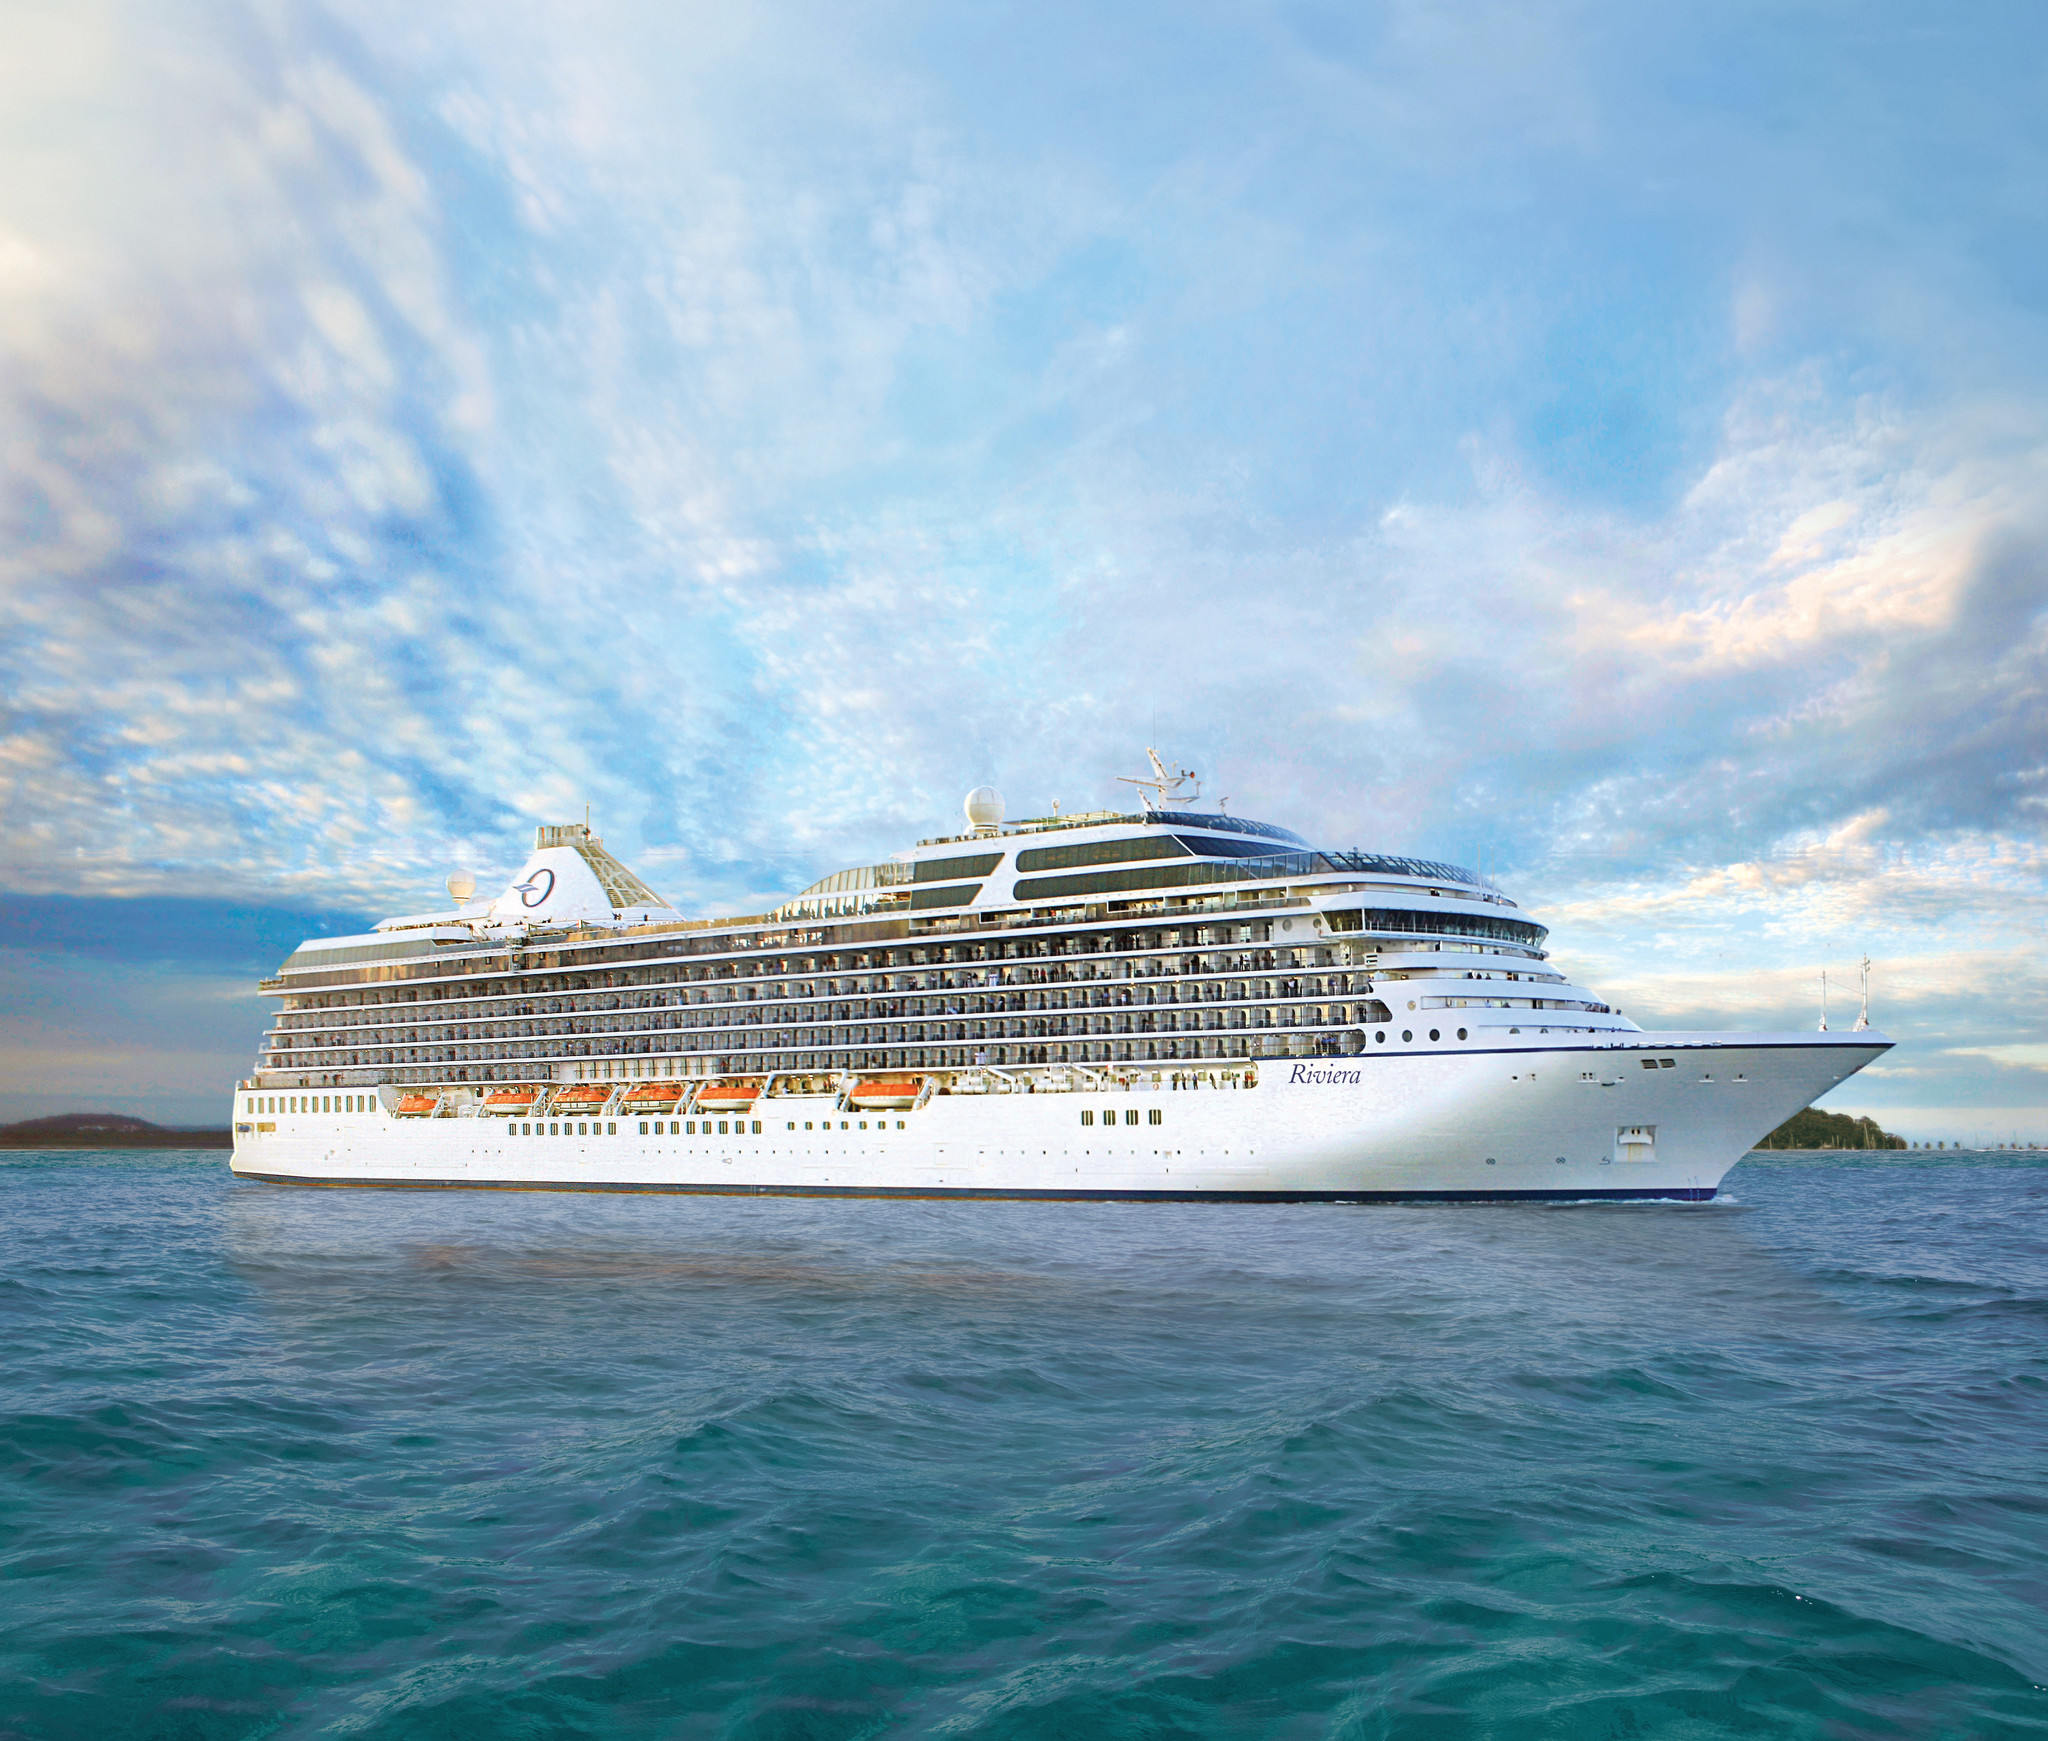 oceania cruise ship refurbishment schedule